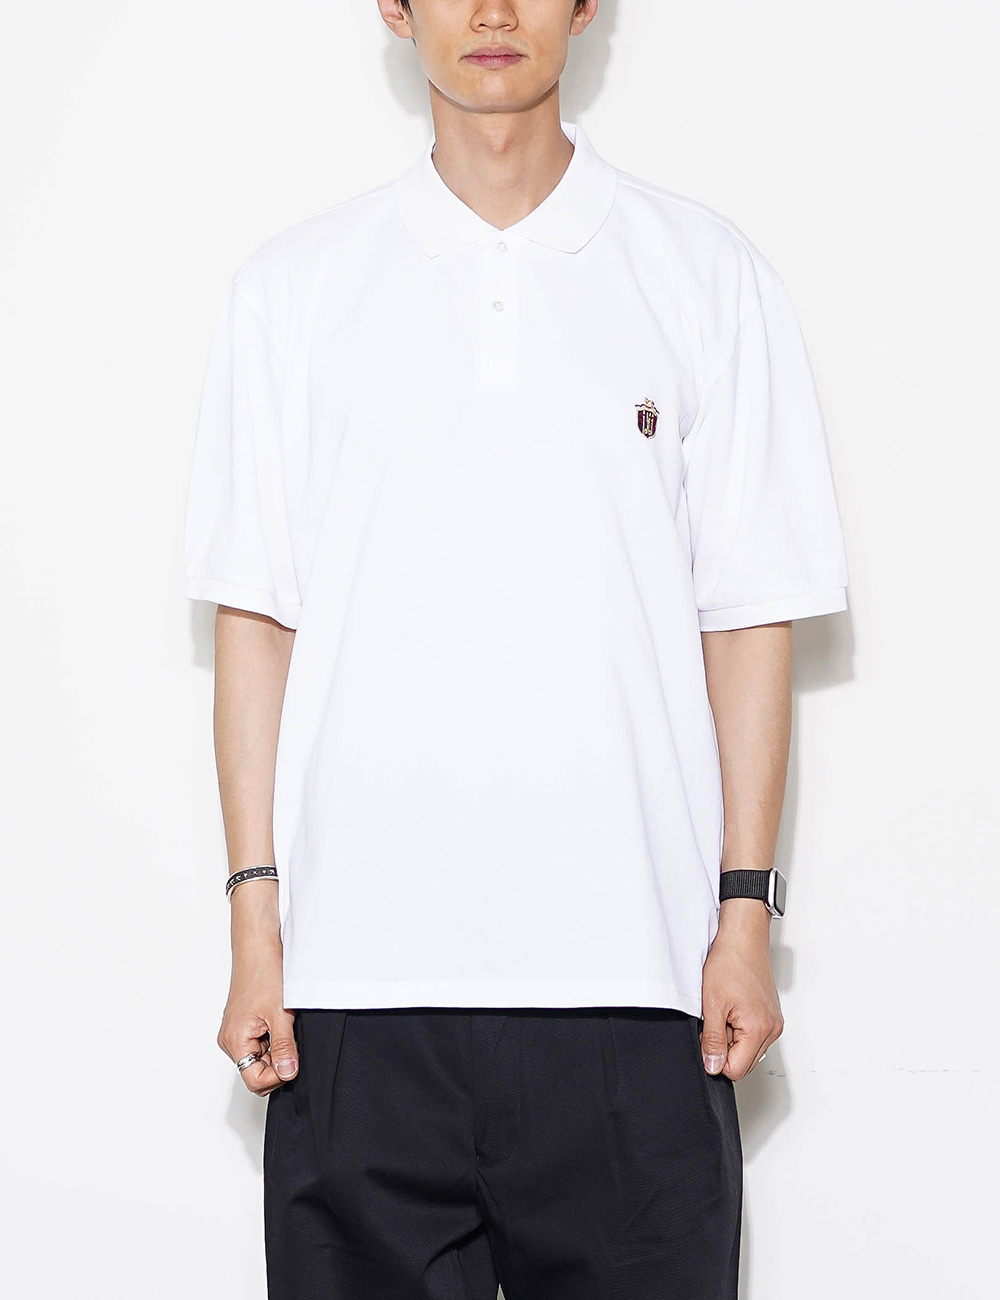 CRST Polo Shirts (White)